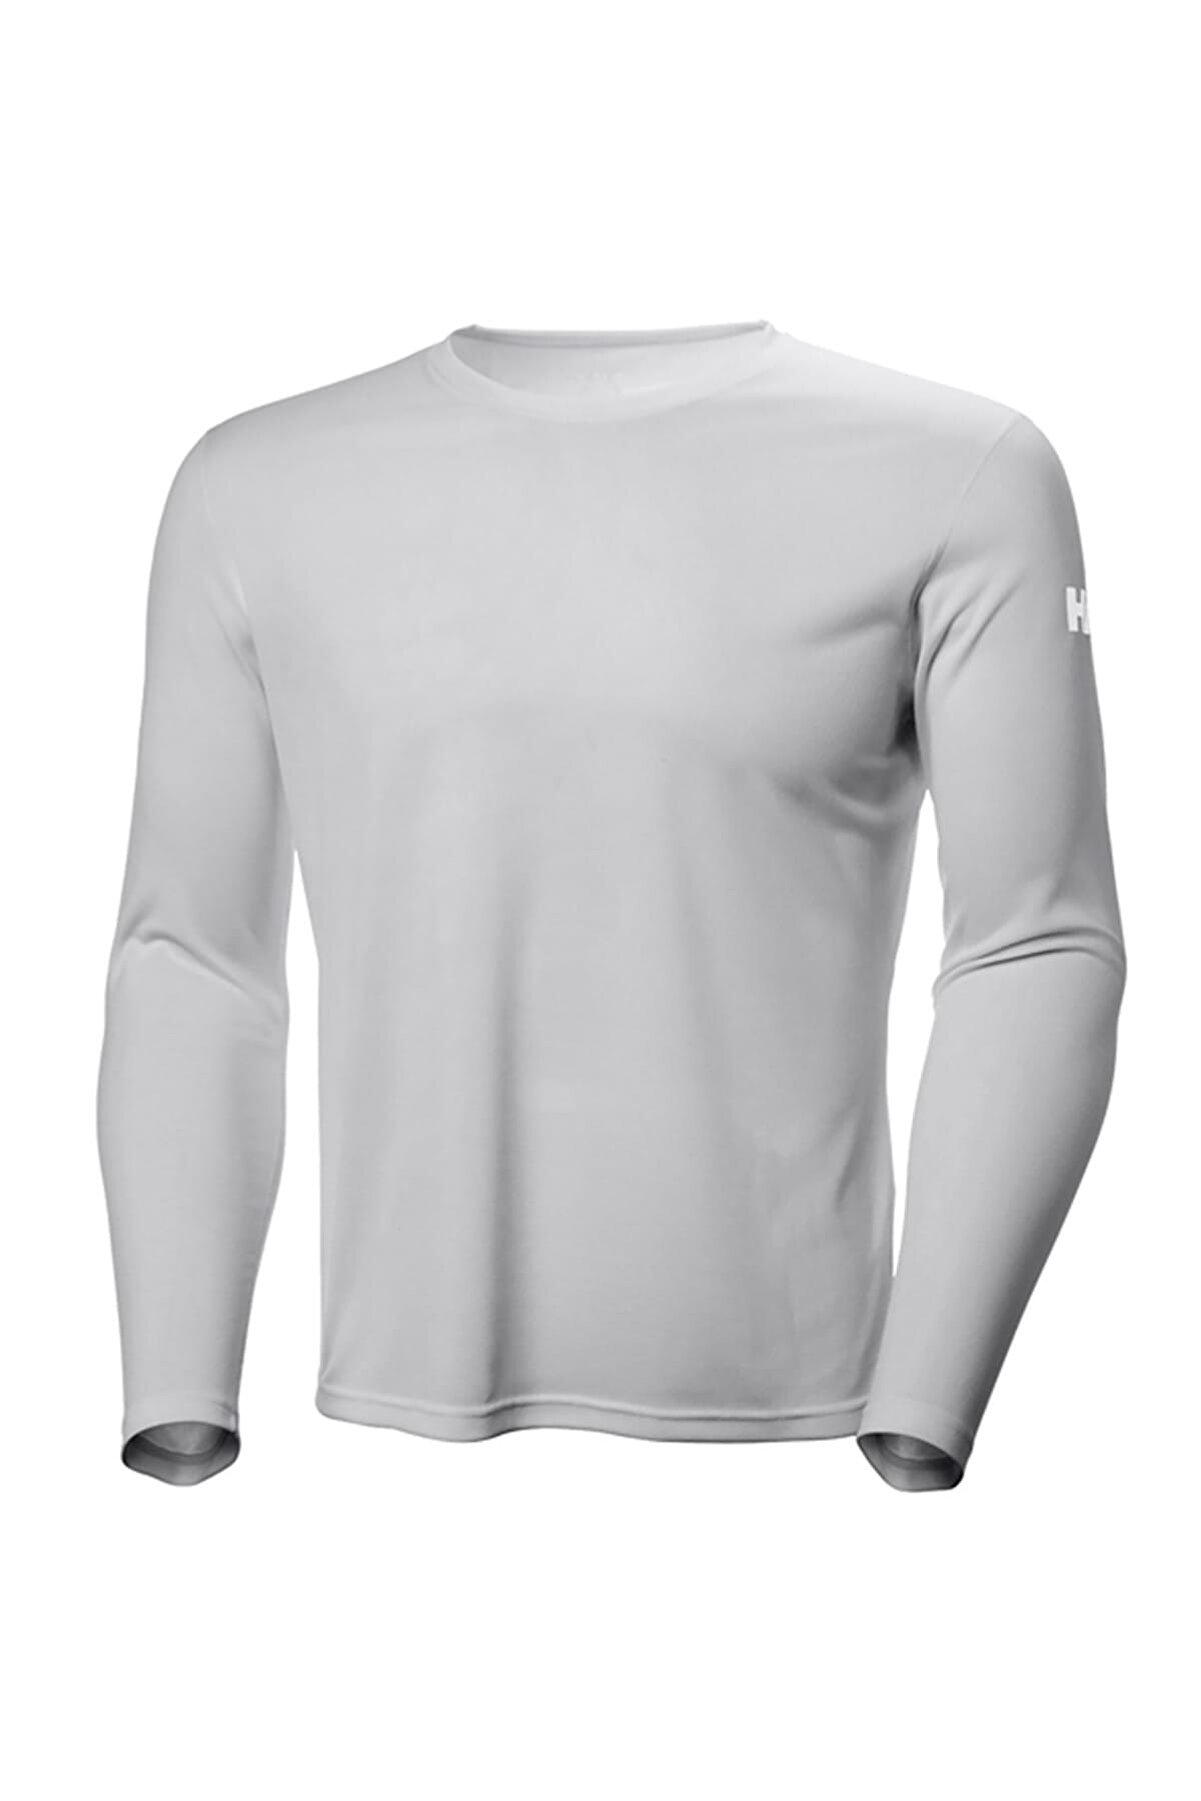 Helly Hansen Tech Crew Uzun Kollu T Shirt Light Grey